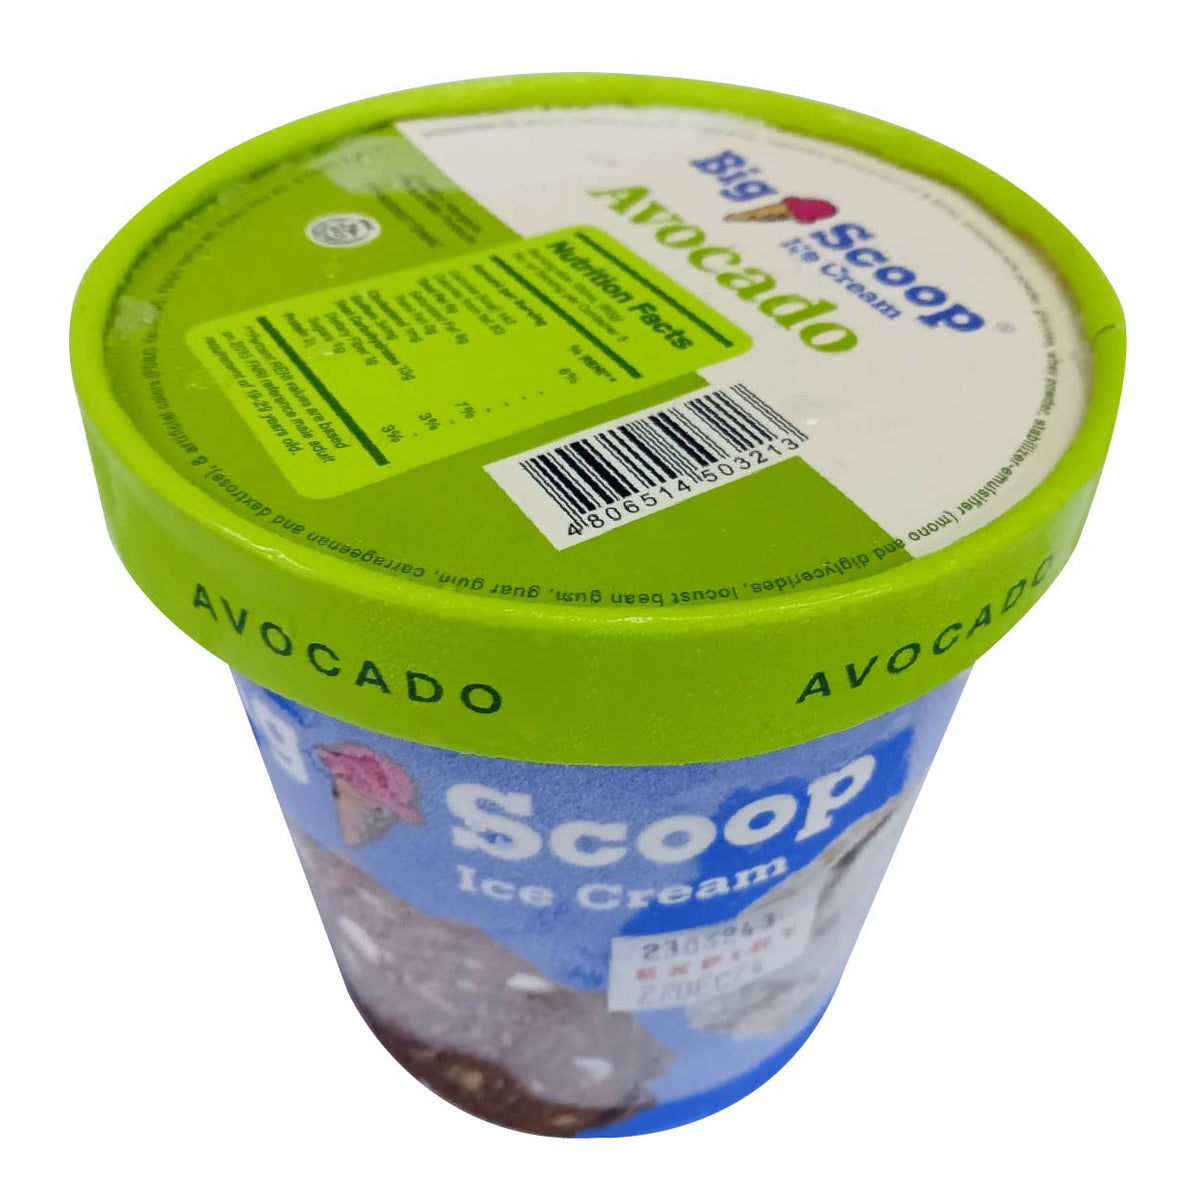 Big Scoop Avocado Ice Cream Pint 473ml